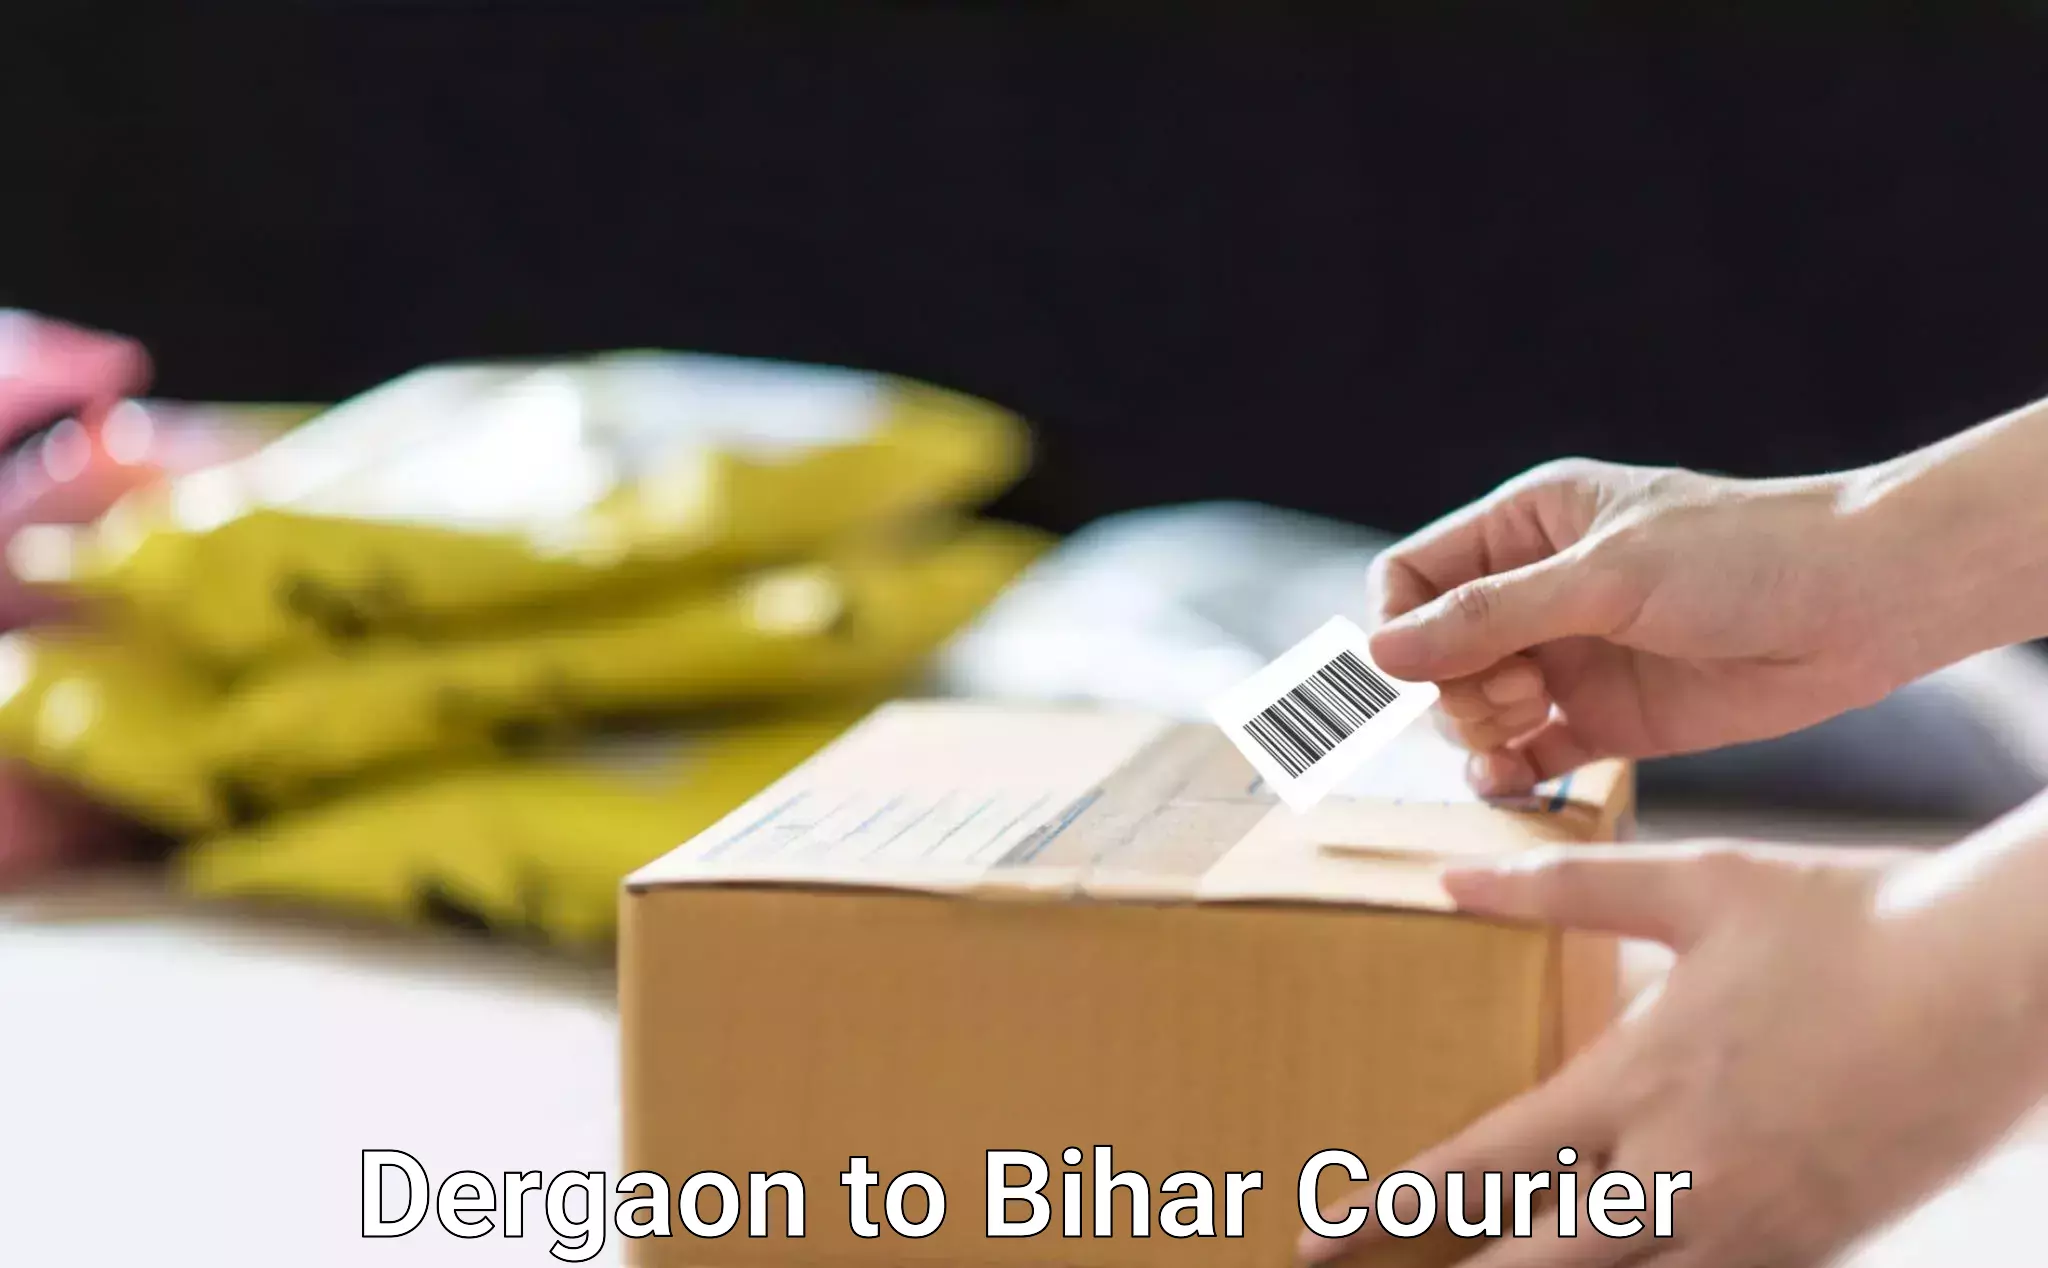 Bulk shipping discounts Dergaon to Patna